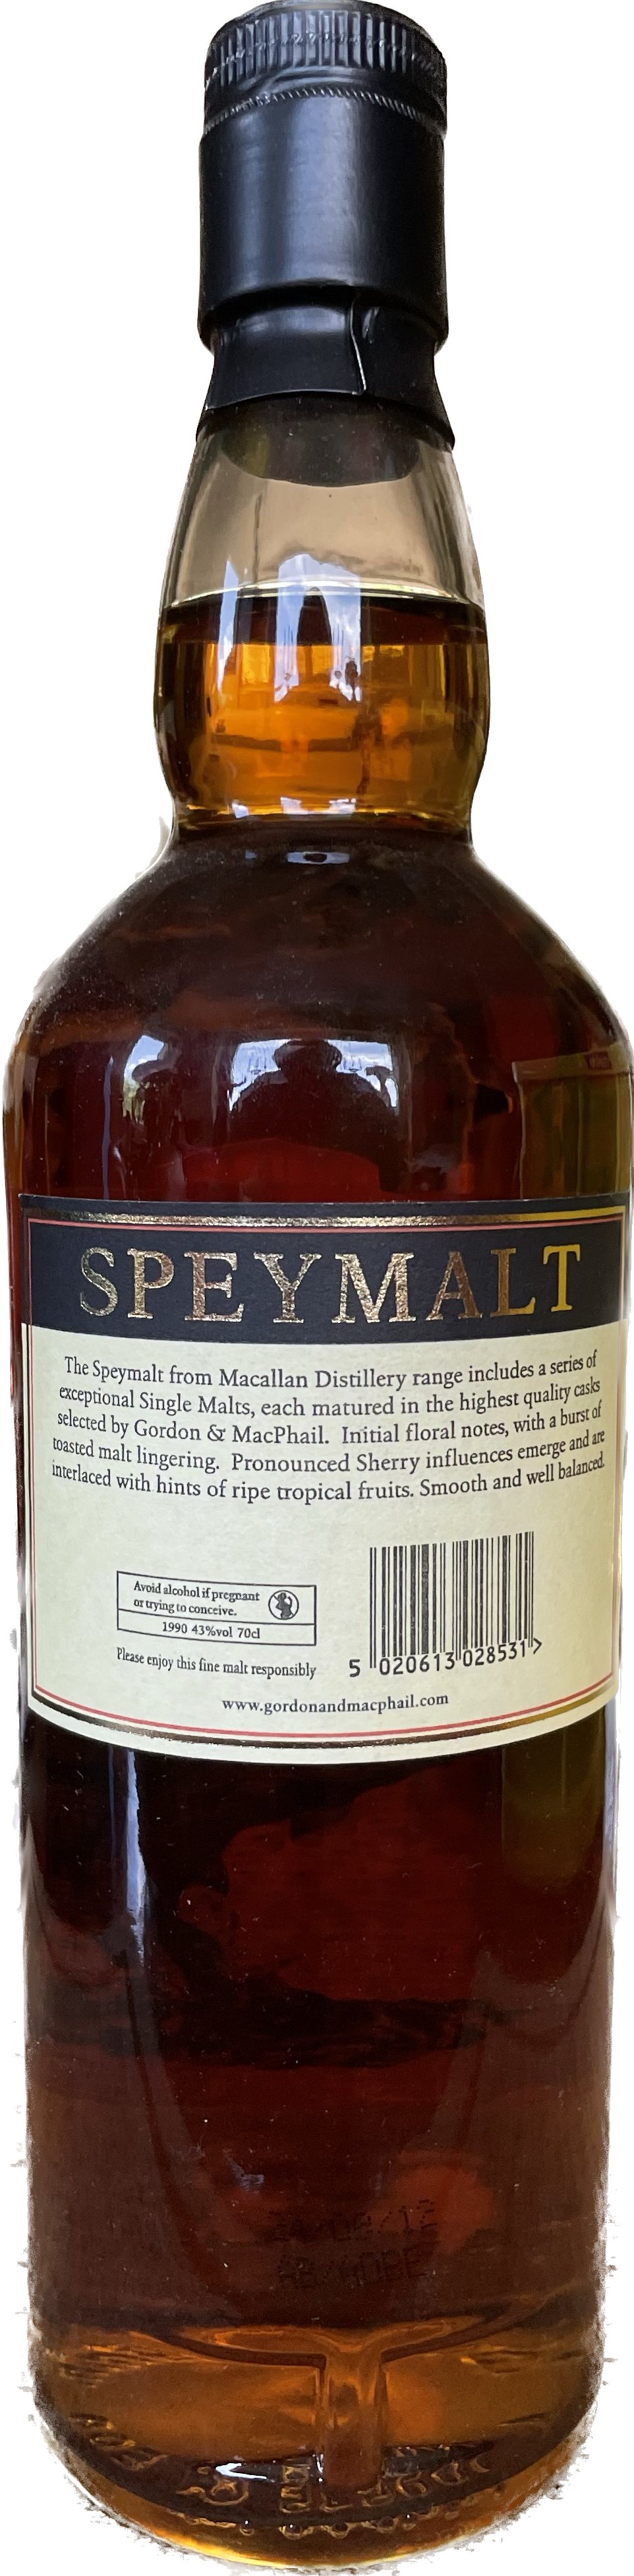 Speymalt Macallan von 1990 Whisky